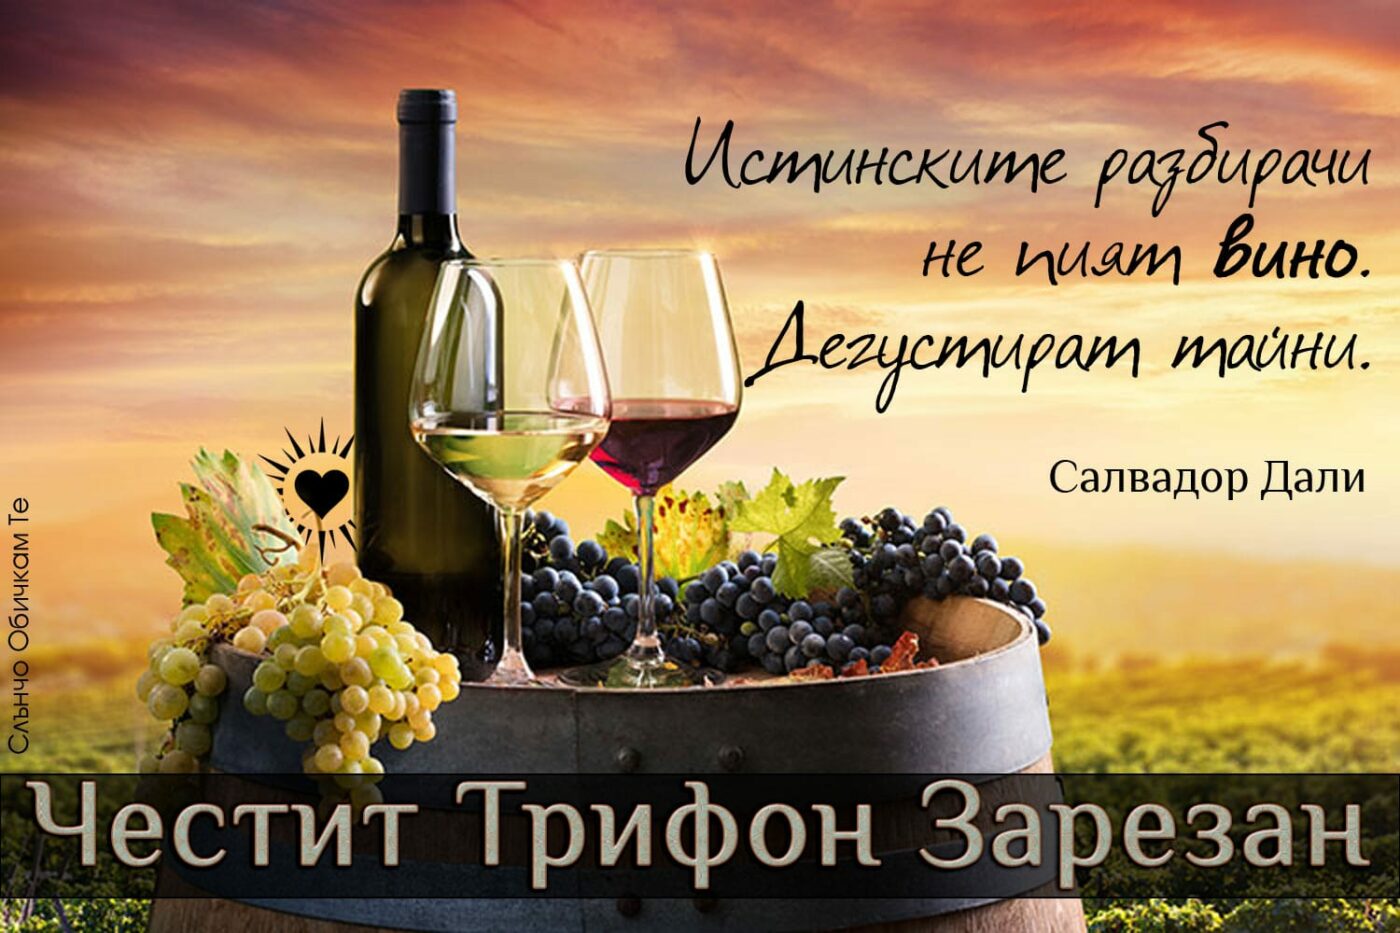 Честит Трифон Зарезан - Истинските разбирачи не пият вино. Дегустират тайни - цитати на Салвадор Дали